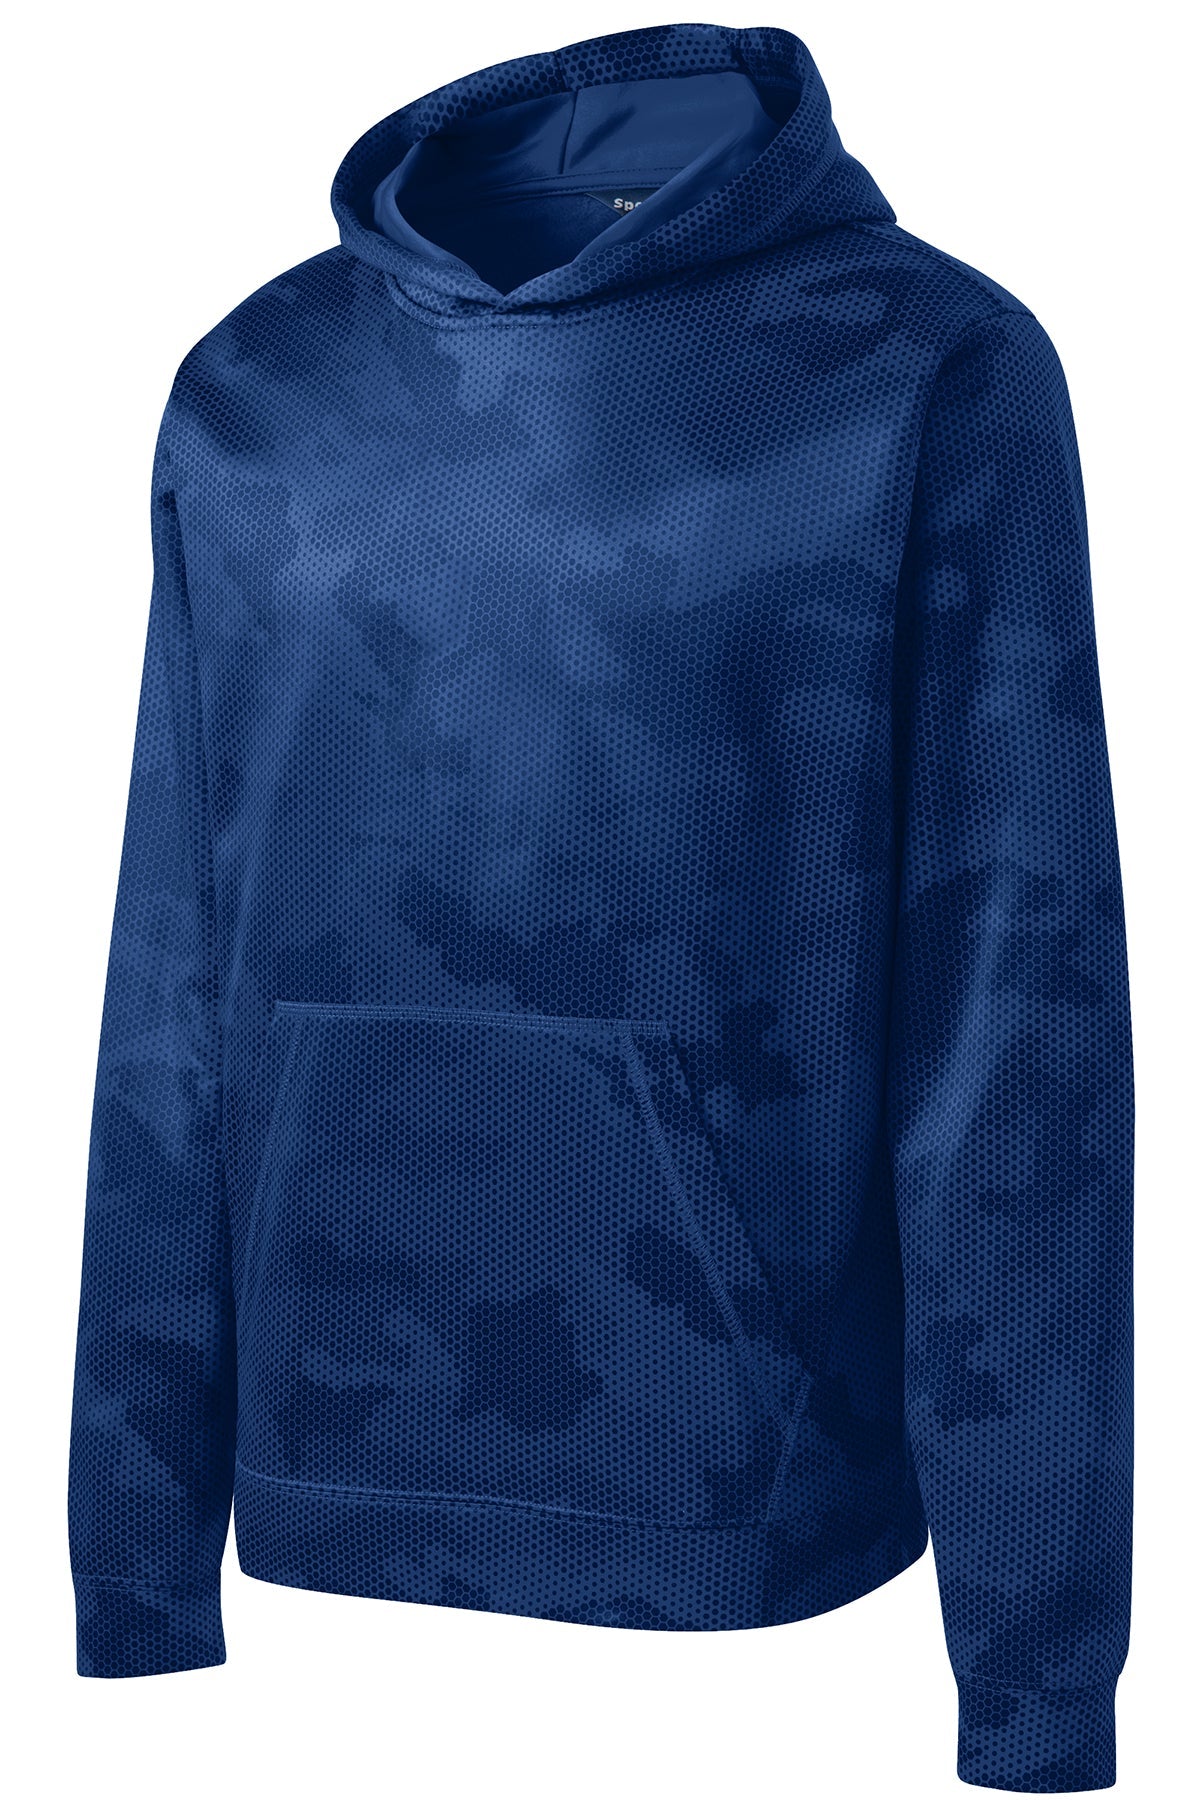 YST240 Sport-Tek® Youth Sport-Wick® CamoHex Fleece Hooded Pullover